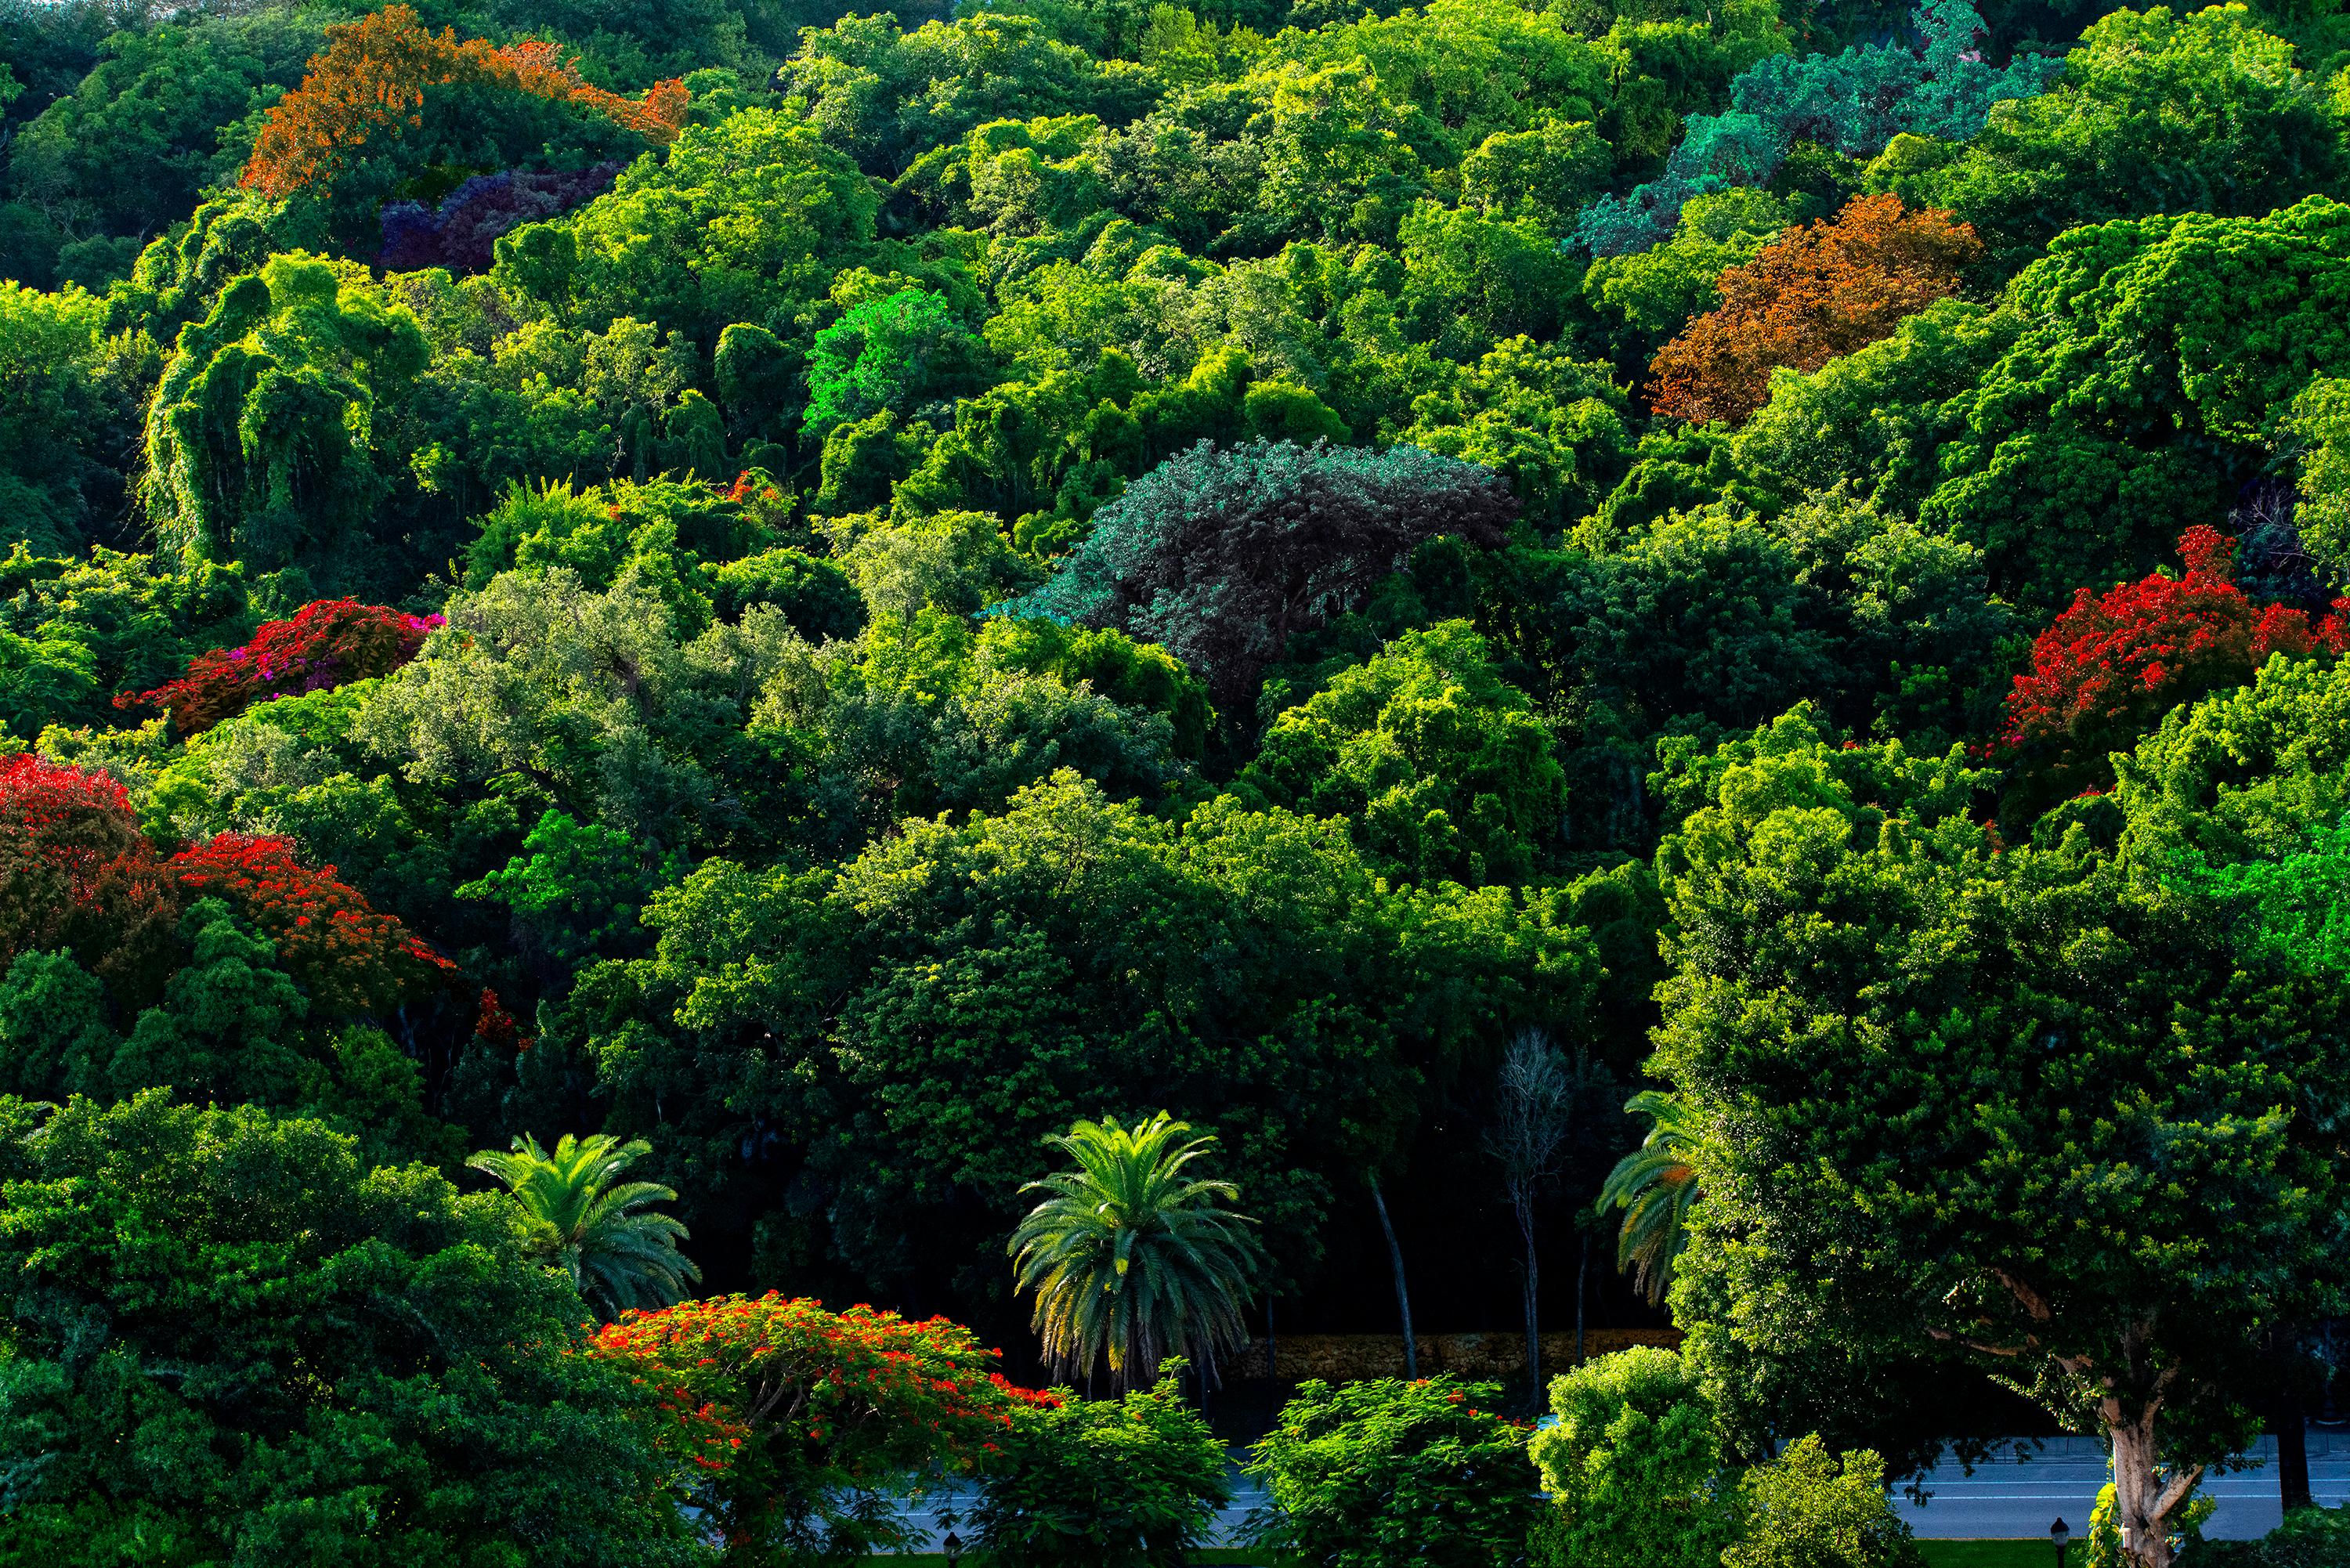 Robert Funk Landscape Photograph – Baum Bonbon - Simpson Park